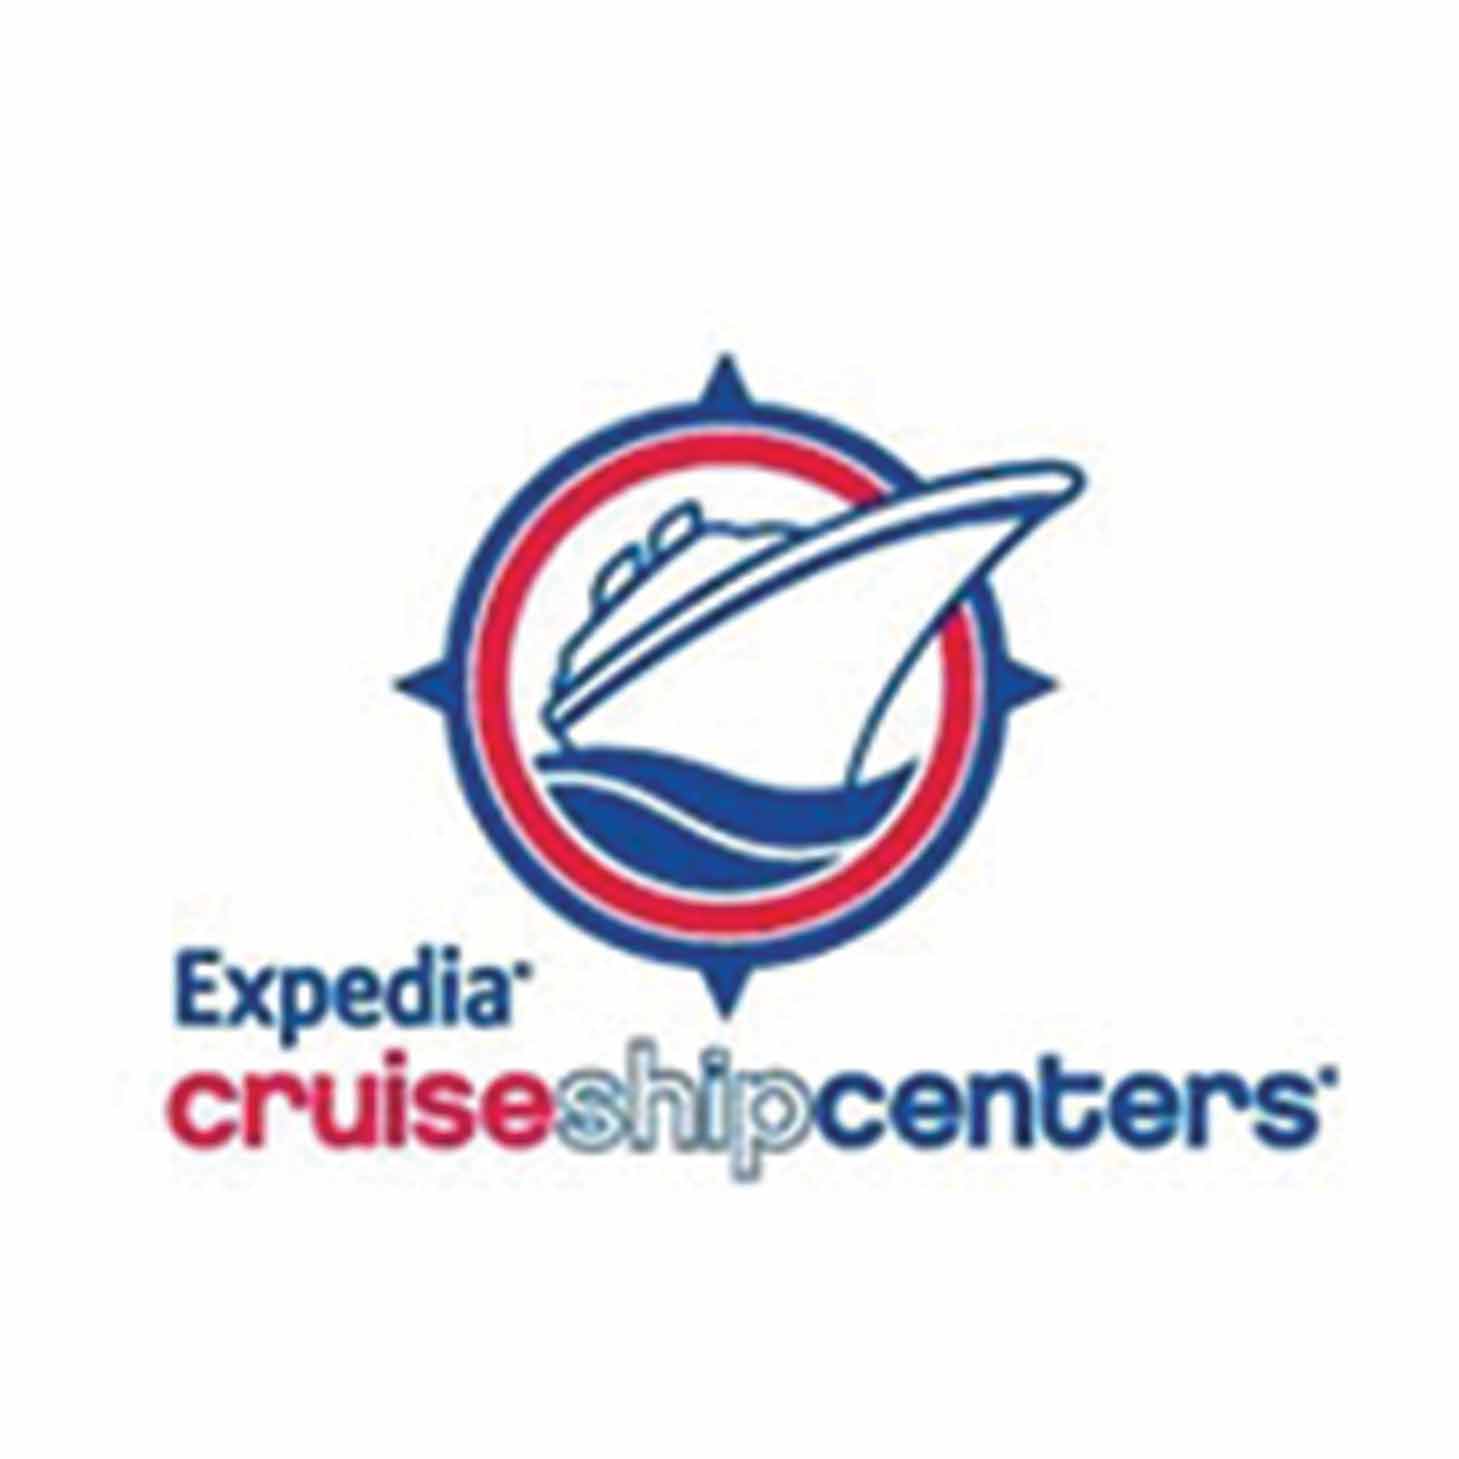 expedia cruise ship center hamilton